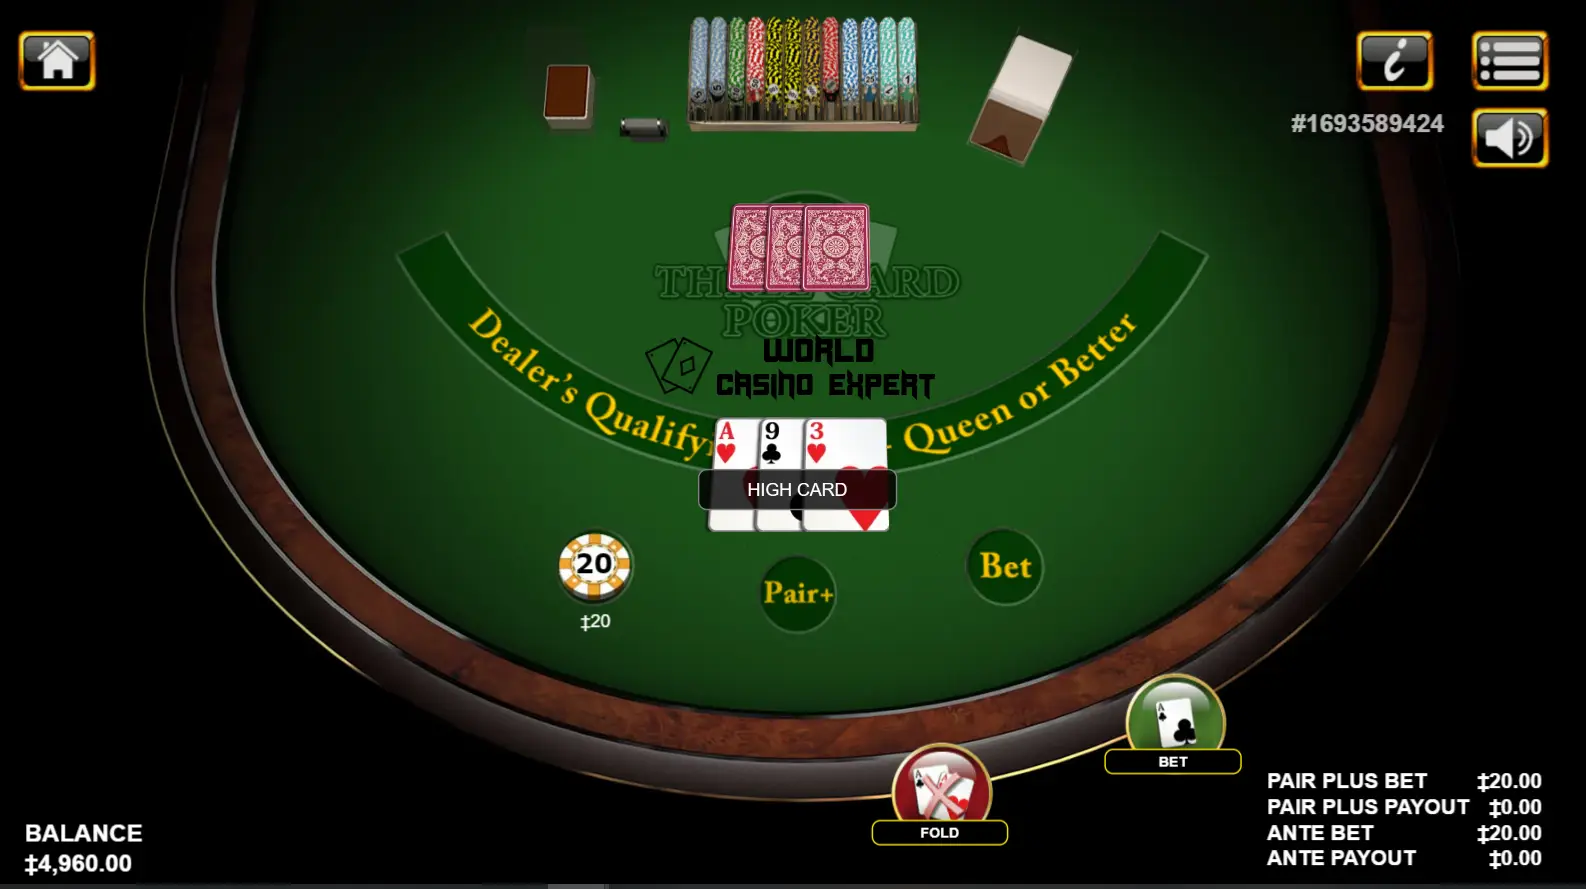 Der Spielablauf So spielen Sie 3 Card Poker | Deutschland World Casino Expert